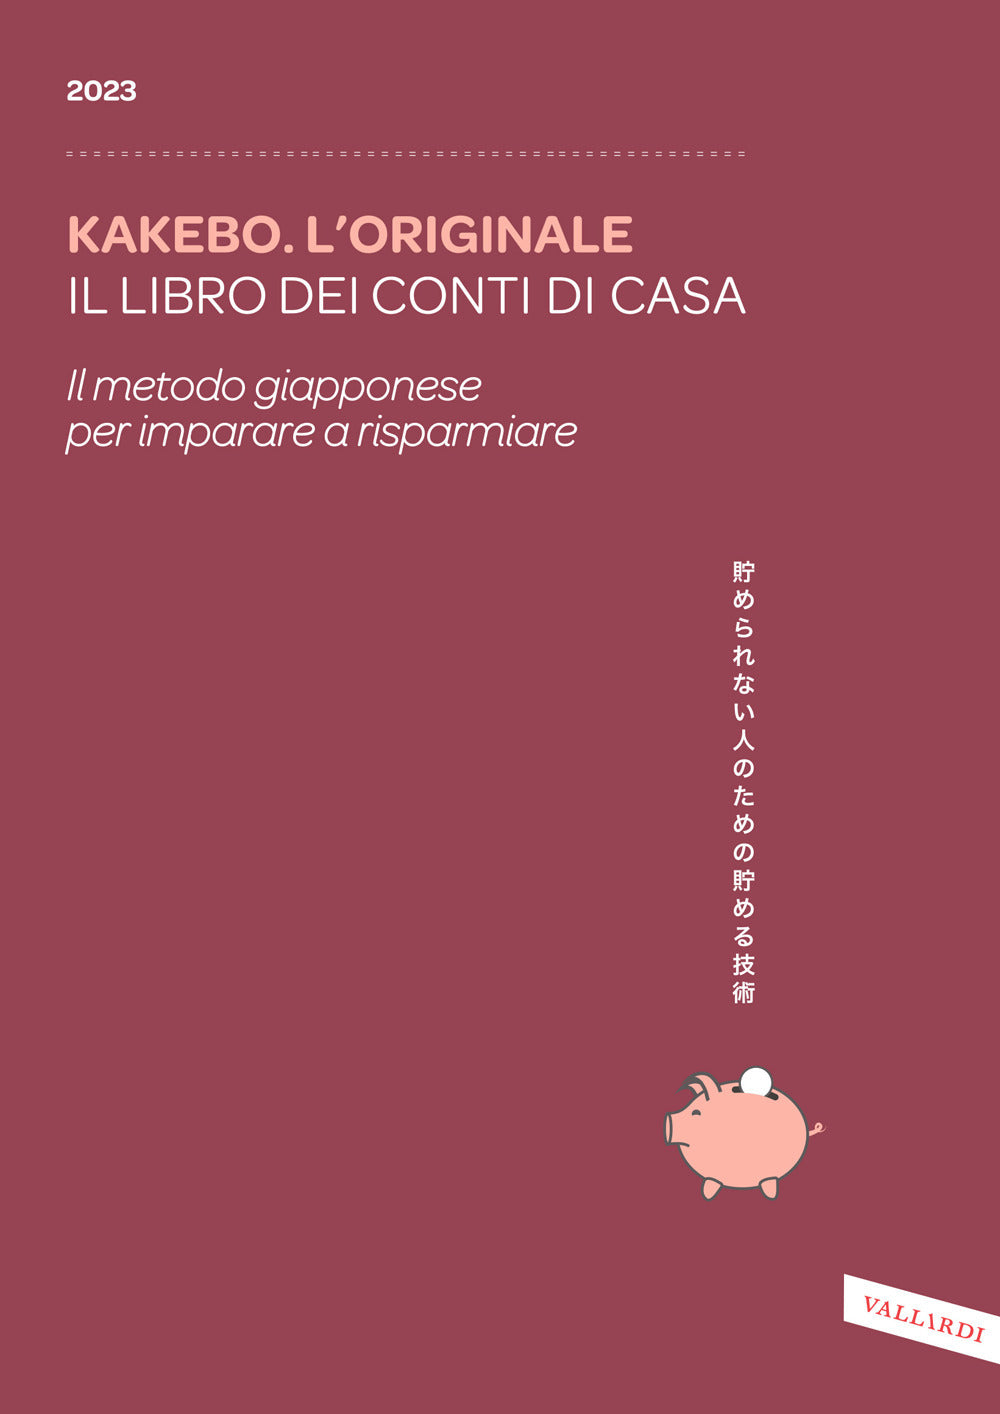 Kakebo. L'originale 2023. Il libro dei conti di casa. Il metodo giapponese per imparare a risparmiare.